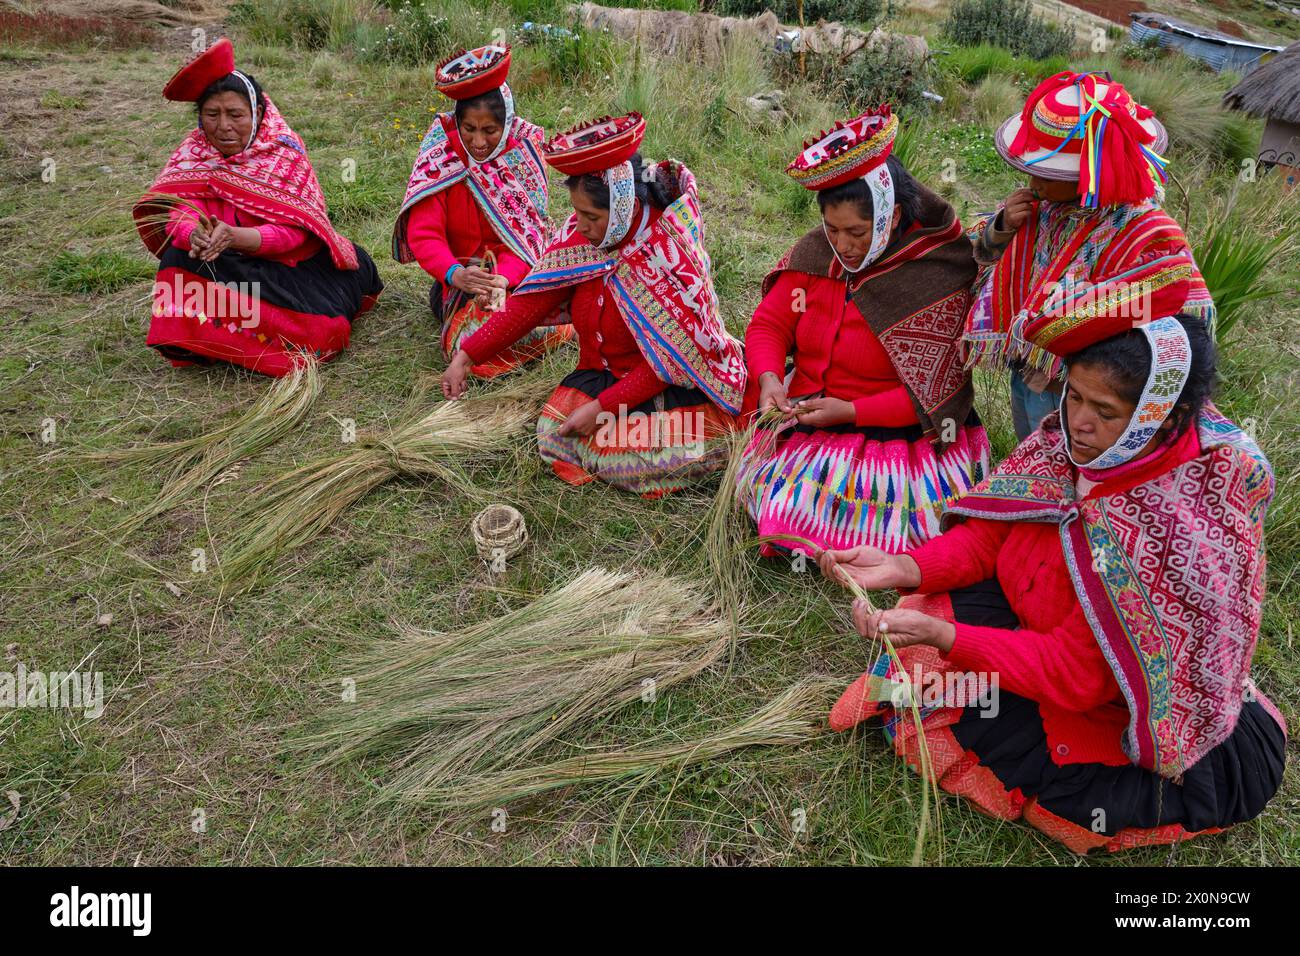 Peru, Provinz Cuzco, Heiliges Tal der Inkas, quechua Gemeinschaft der Anden, Frauen, die Strohseile weben Stockfoto